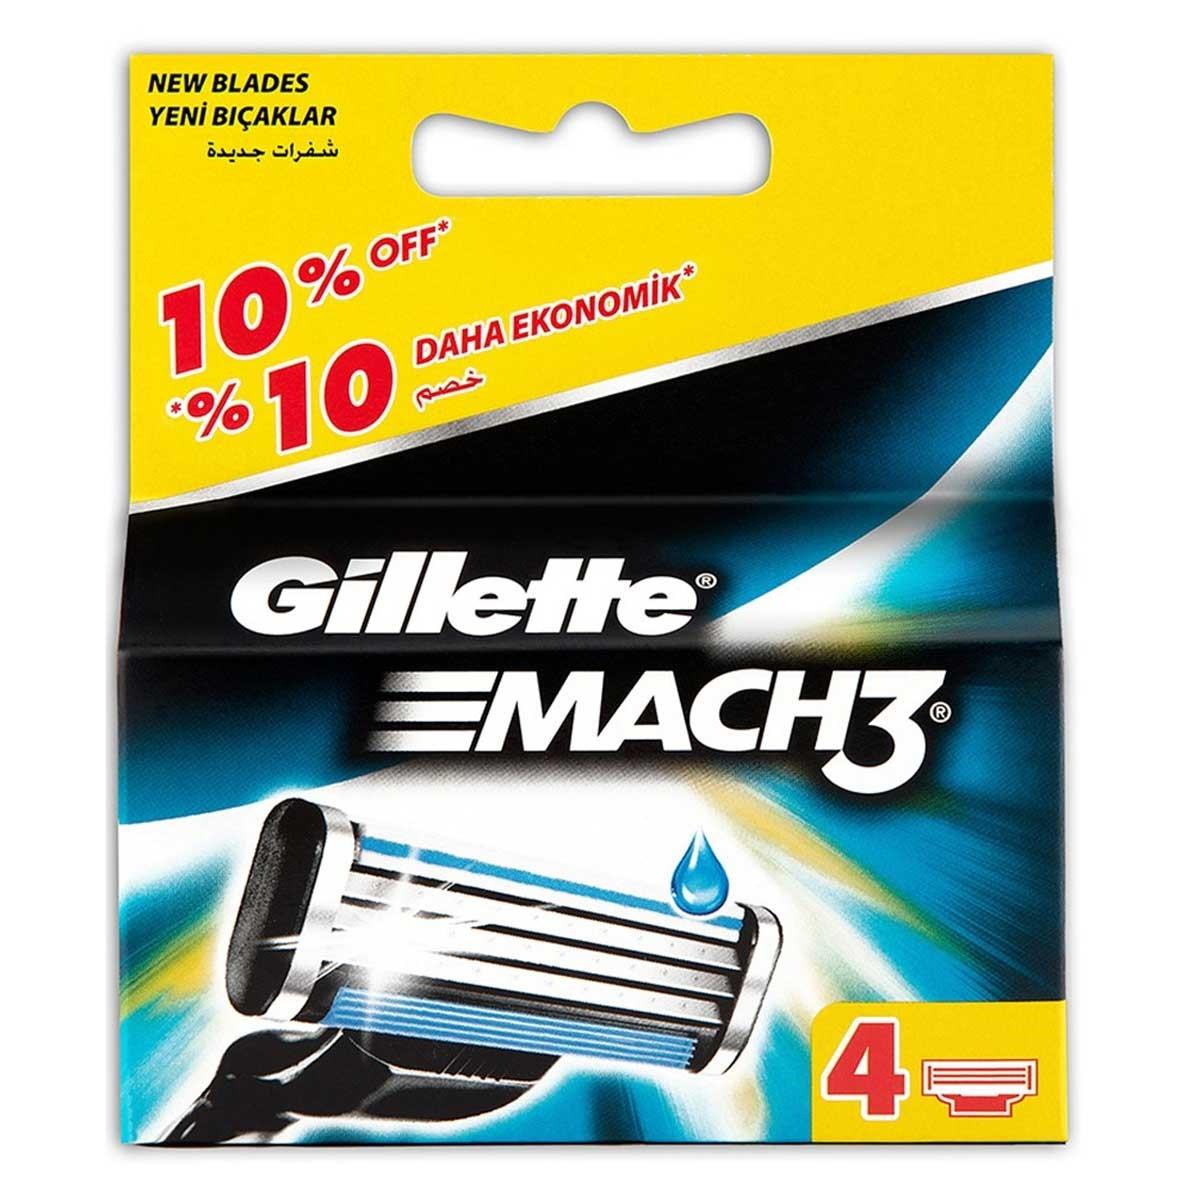 Gillette Mach3 Yedek Tıraş Bıçağı 4 lü